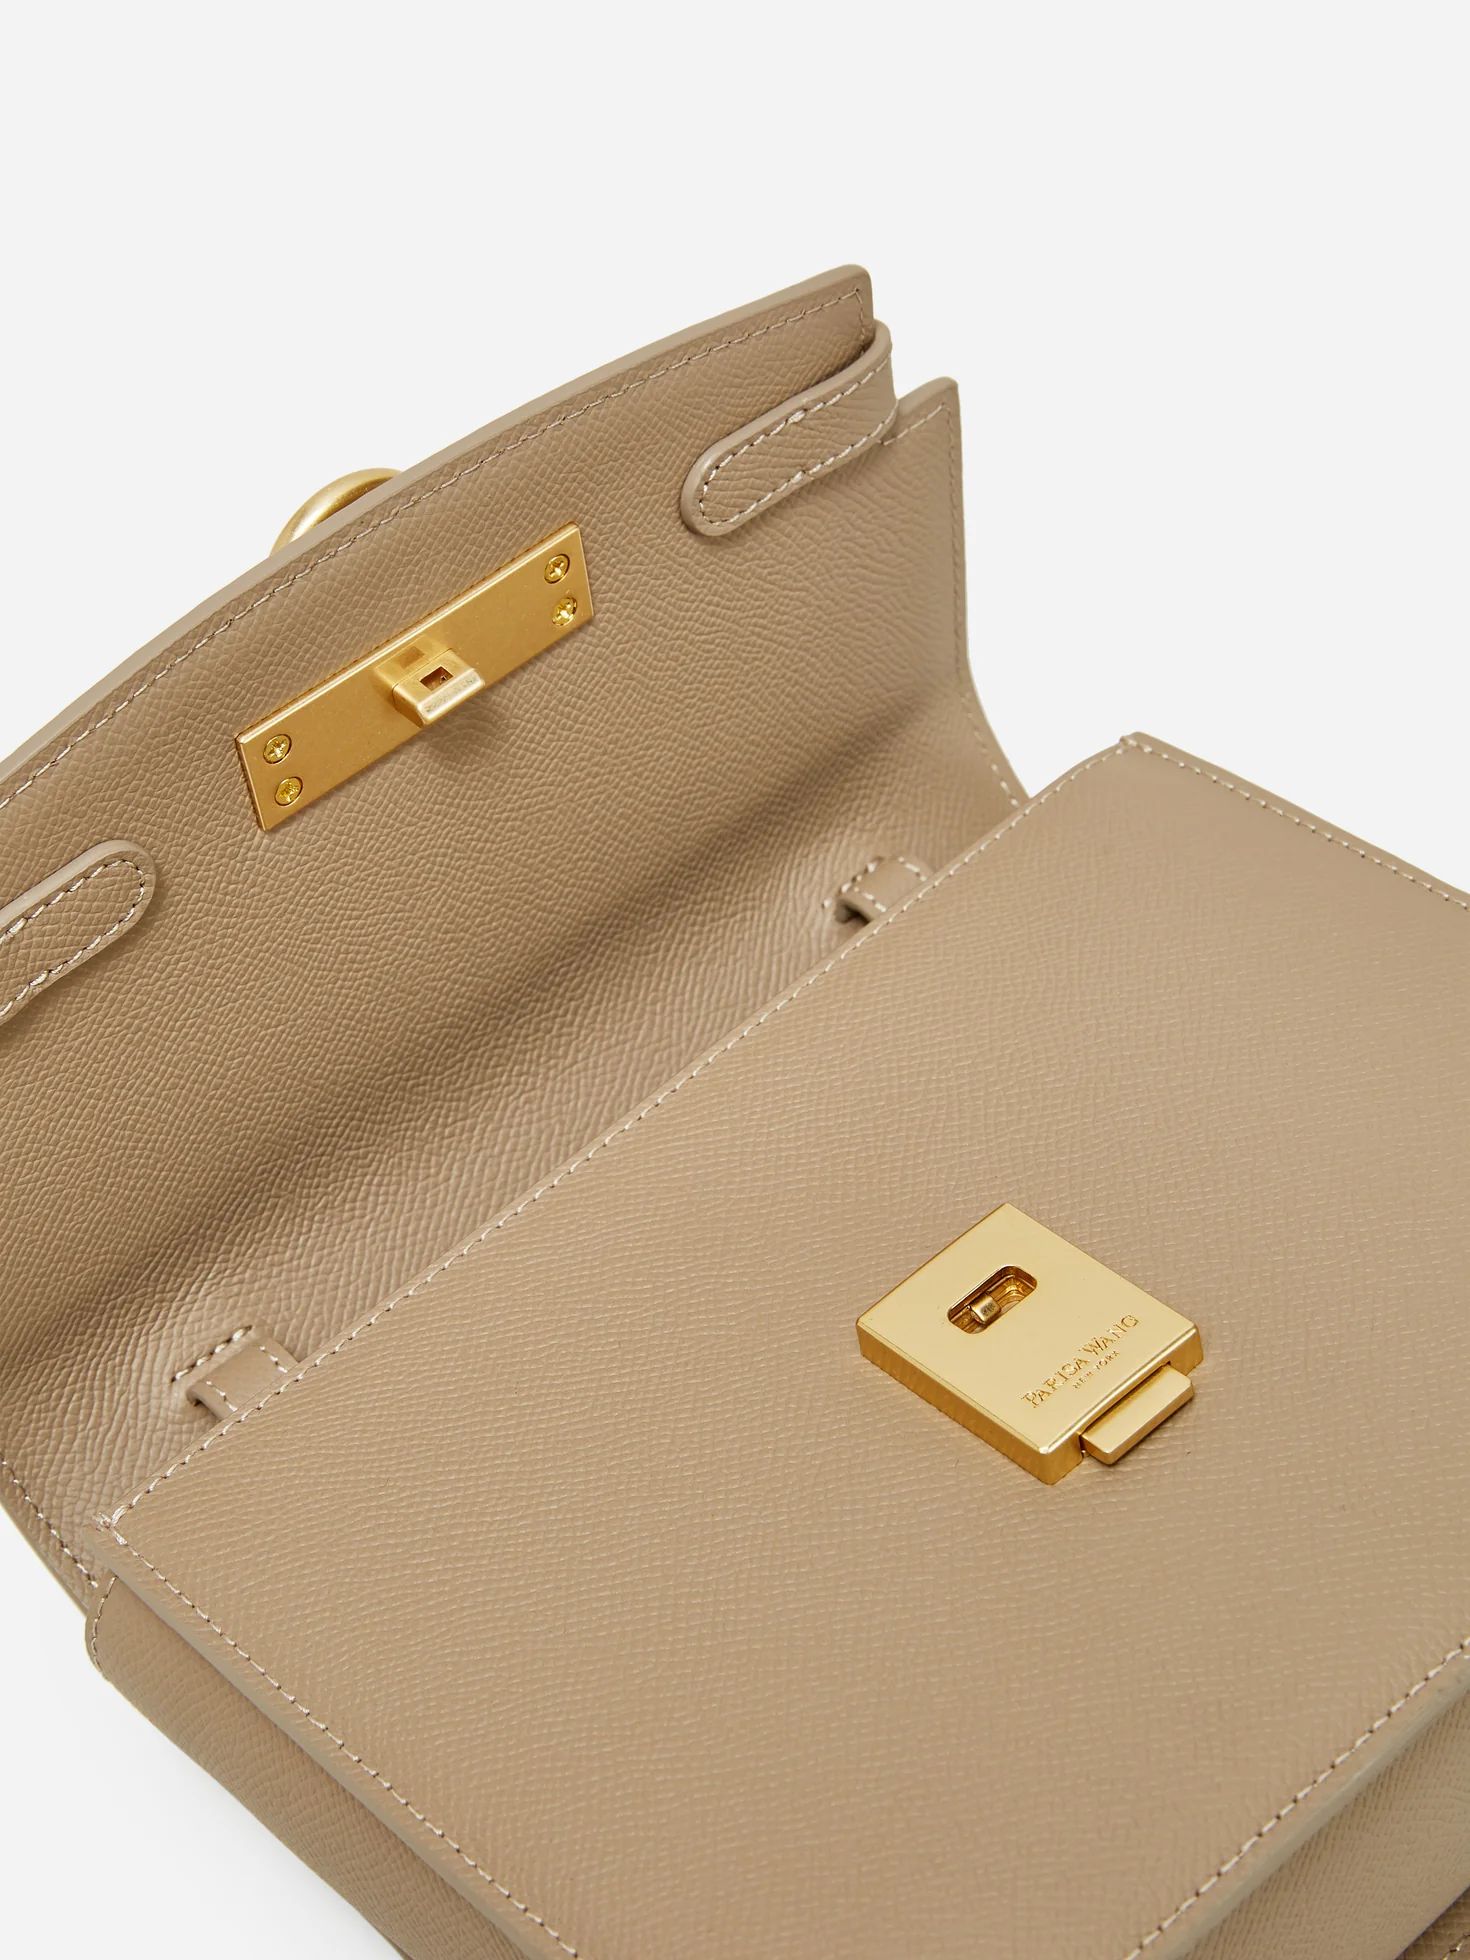 Unlocked Box Flap Bag | Parisa Wang